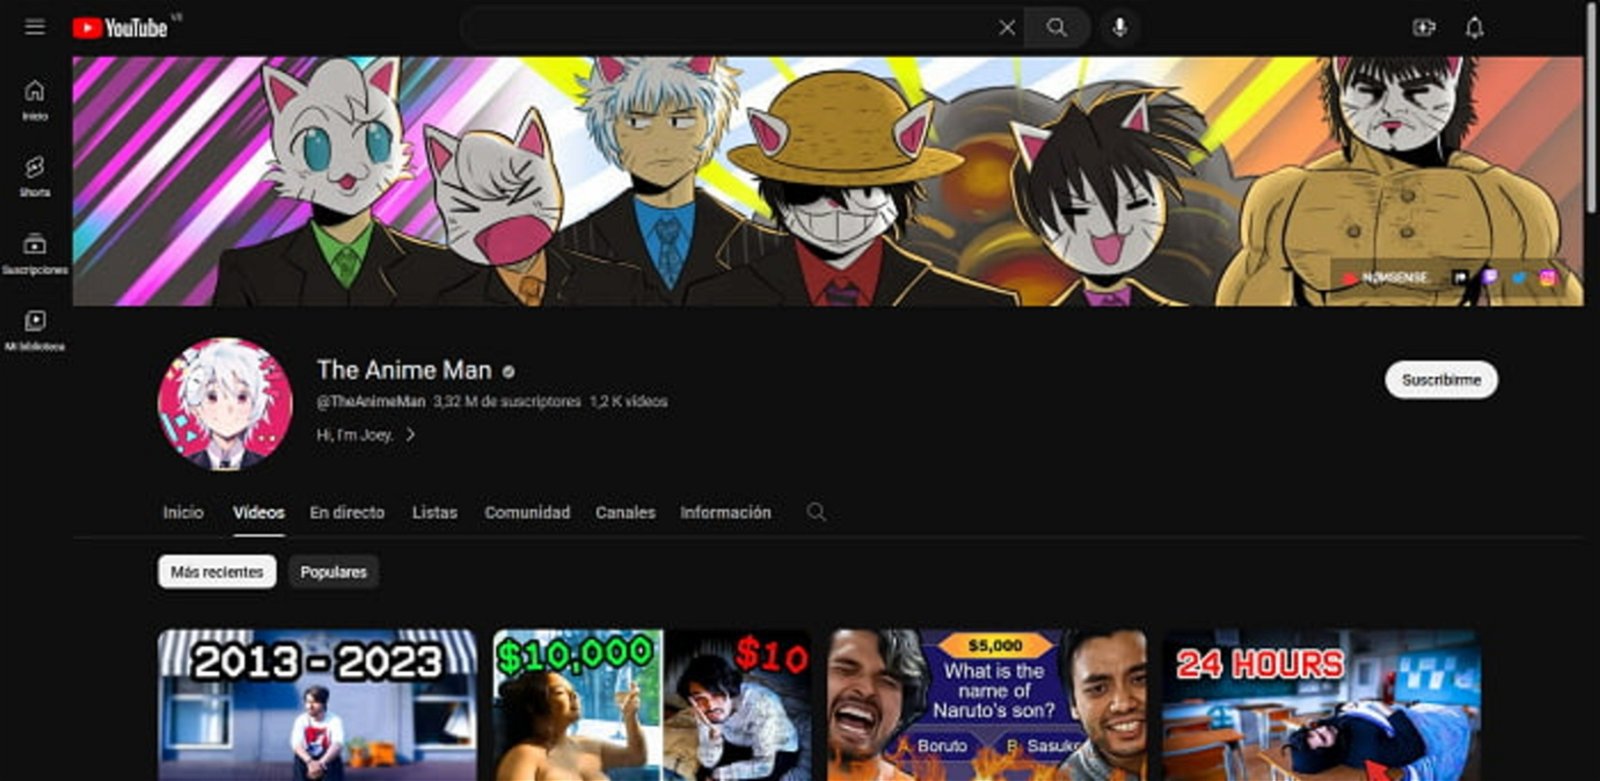 The Anime Man es uno de los canales de Youtube de anime más reconocidos actualmente